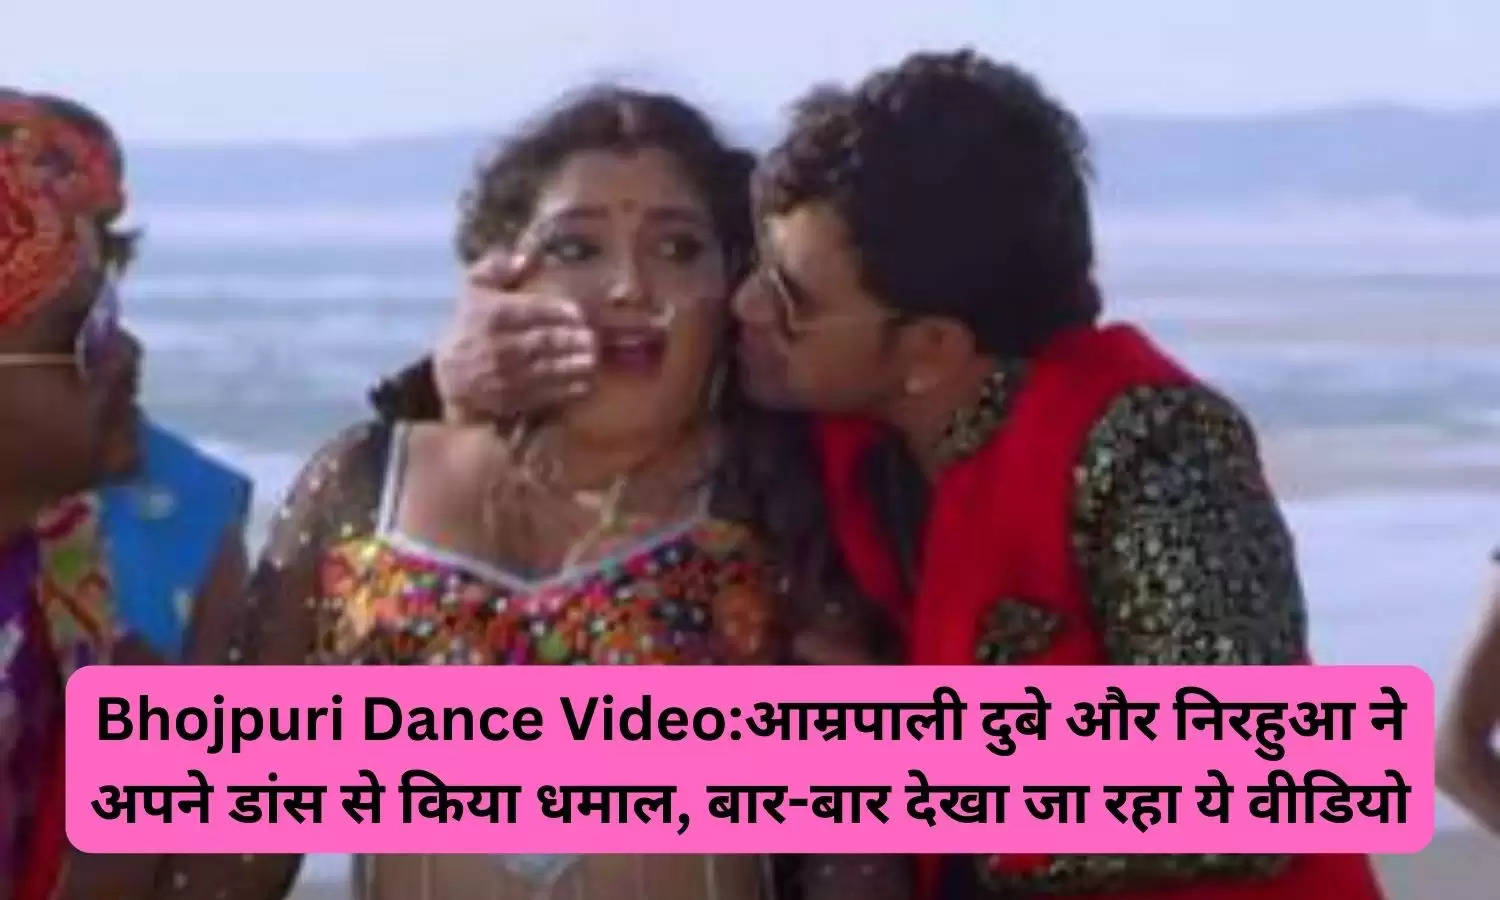 Bhojpuri Dance Video:आम्रपाली दुबे और निरहुआ ने अपने डांस से किया धमाल, बार-बार देखा जा रहा ये वीडियो